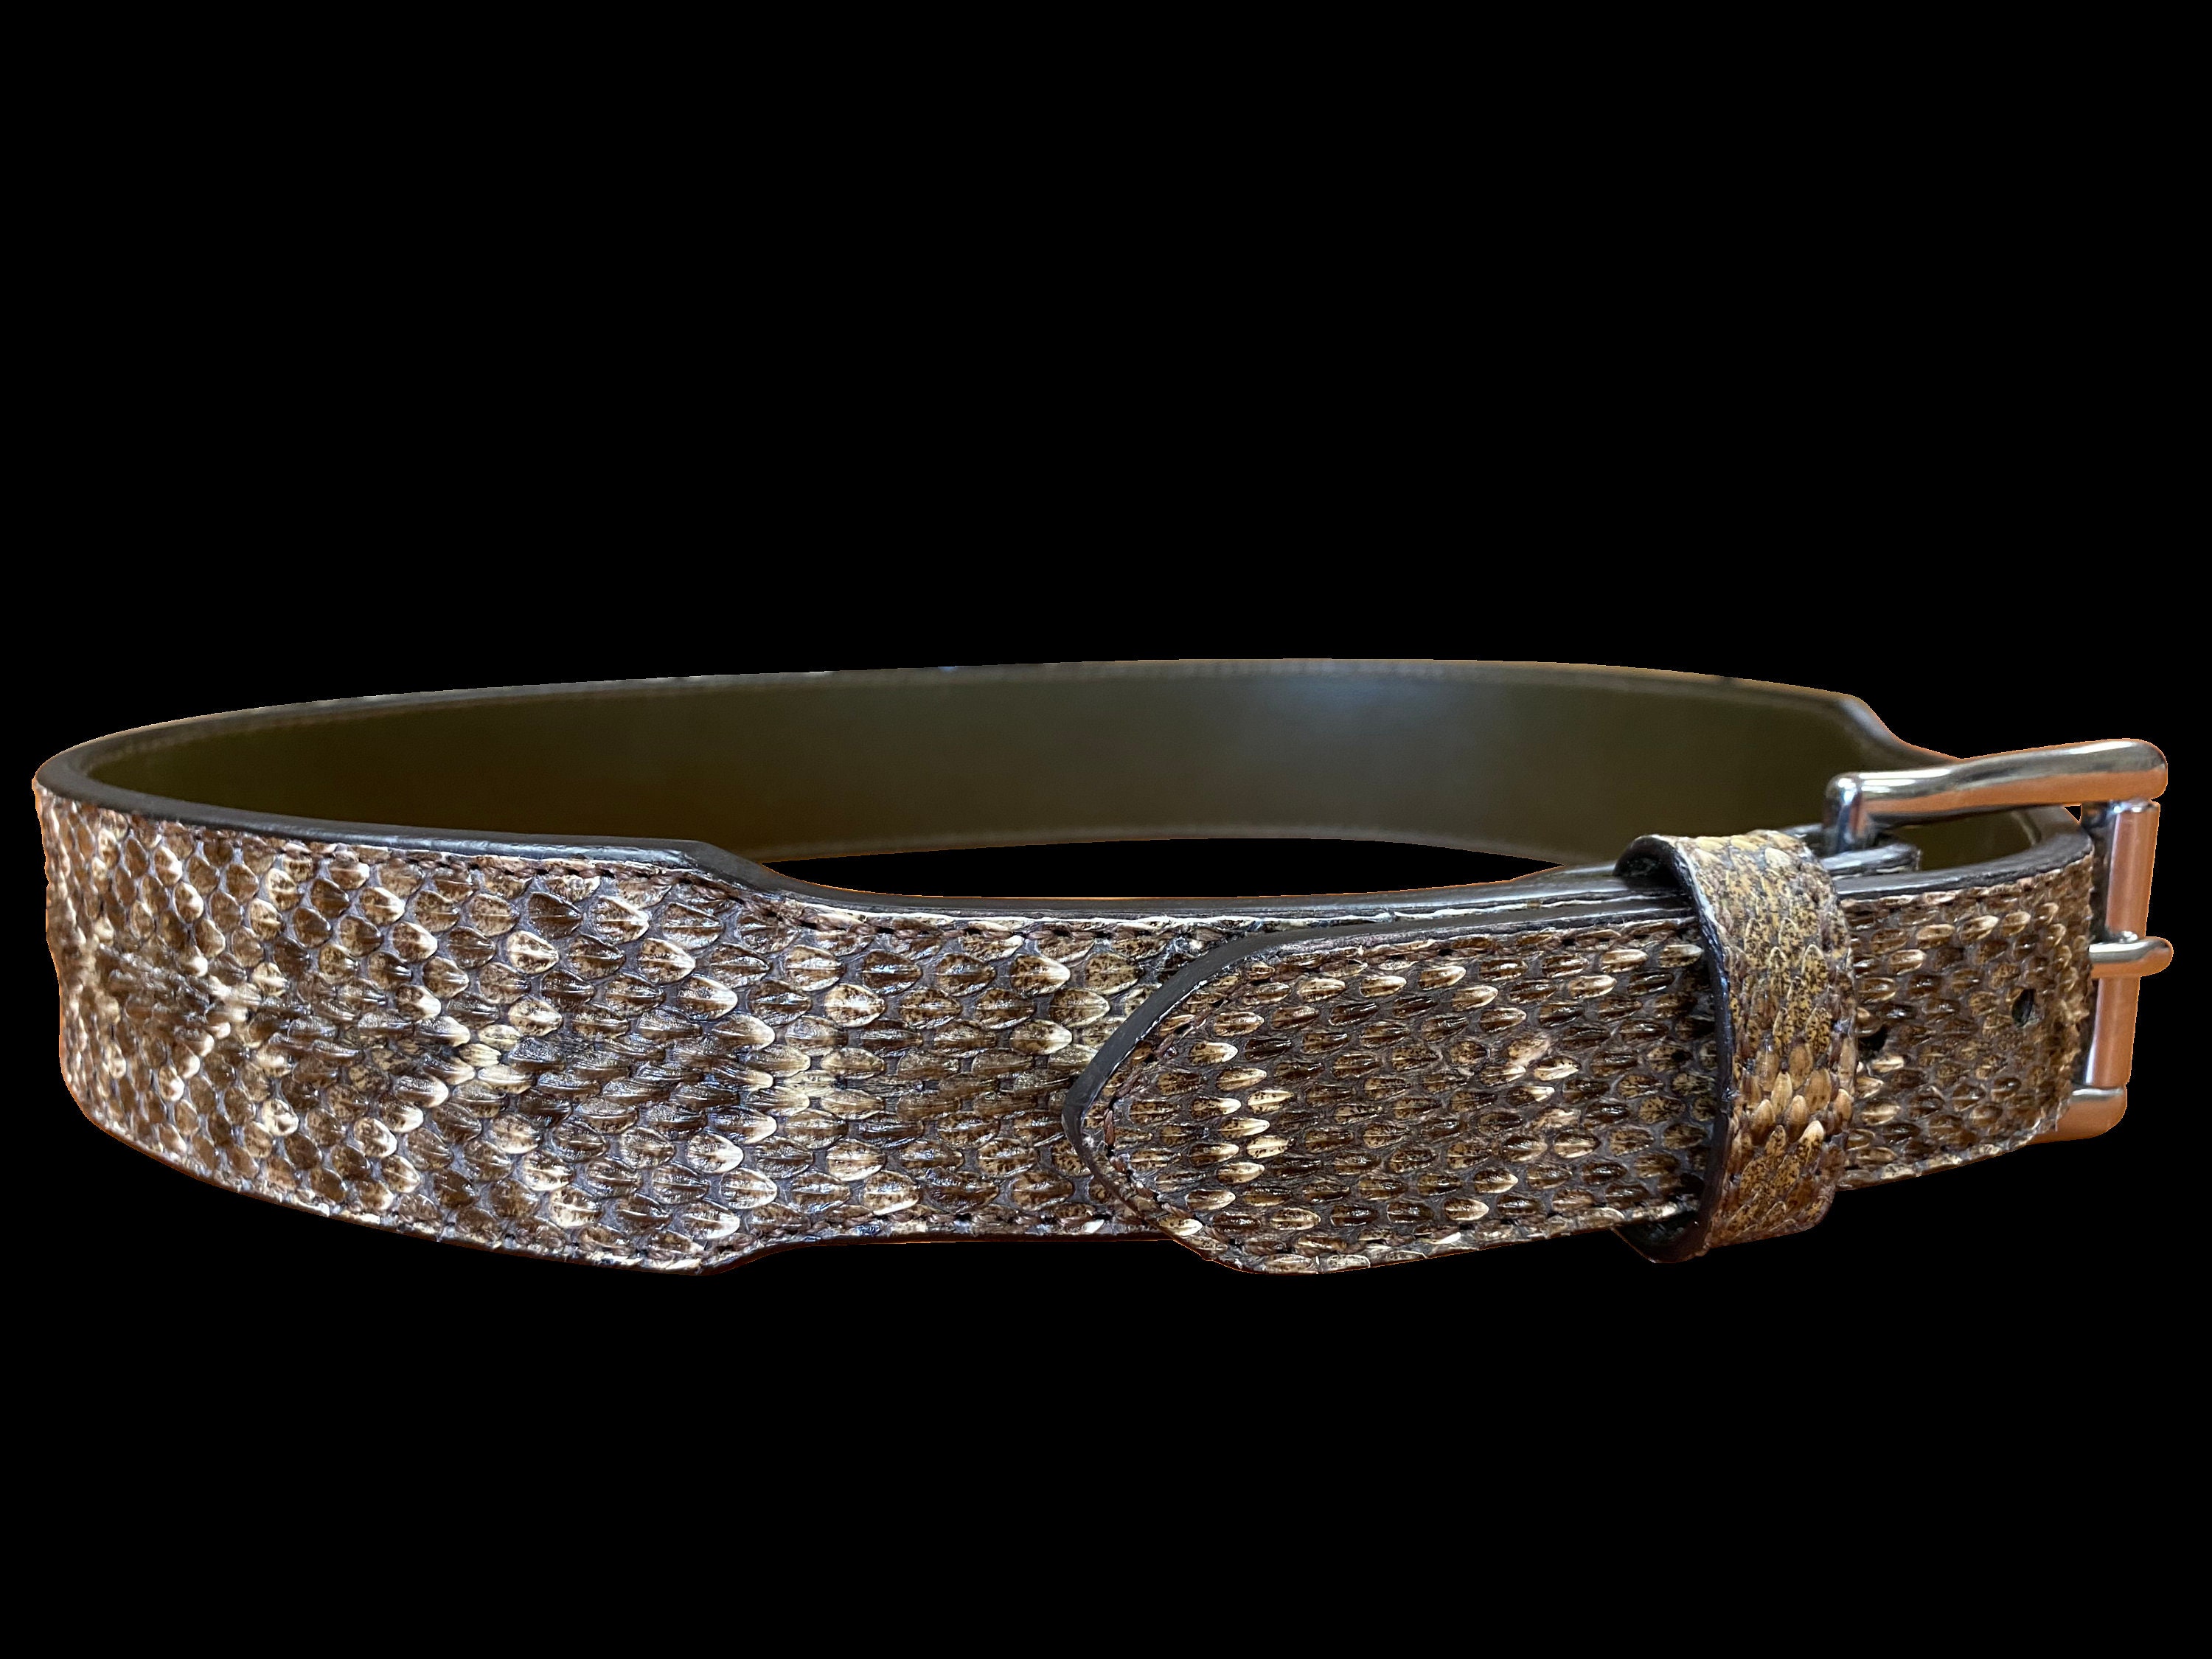 Diamondback Rattlesnake Taper Belt - Etsy